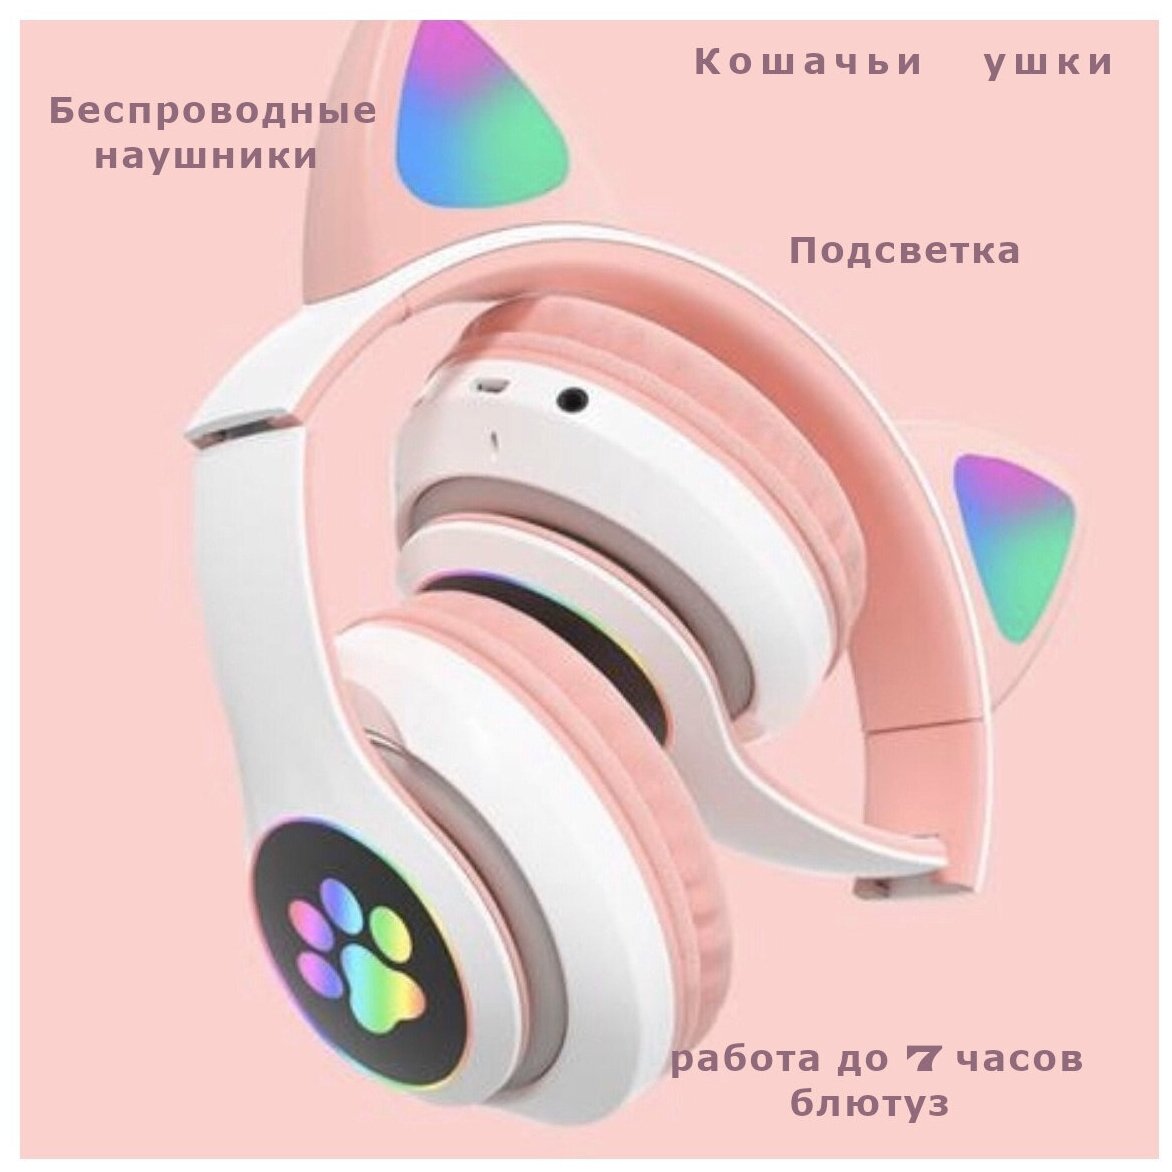 Беспроводные Bluetooth наушники с подсветкой "Кошачьи ушки" / Наушники с подсветкой / Детские наушники / Розовый